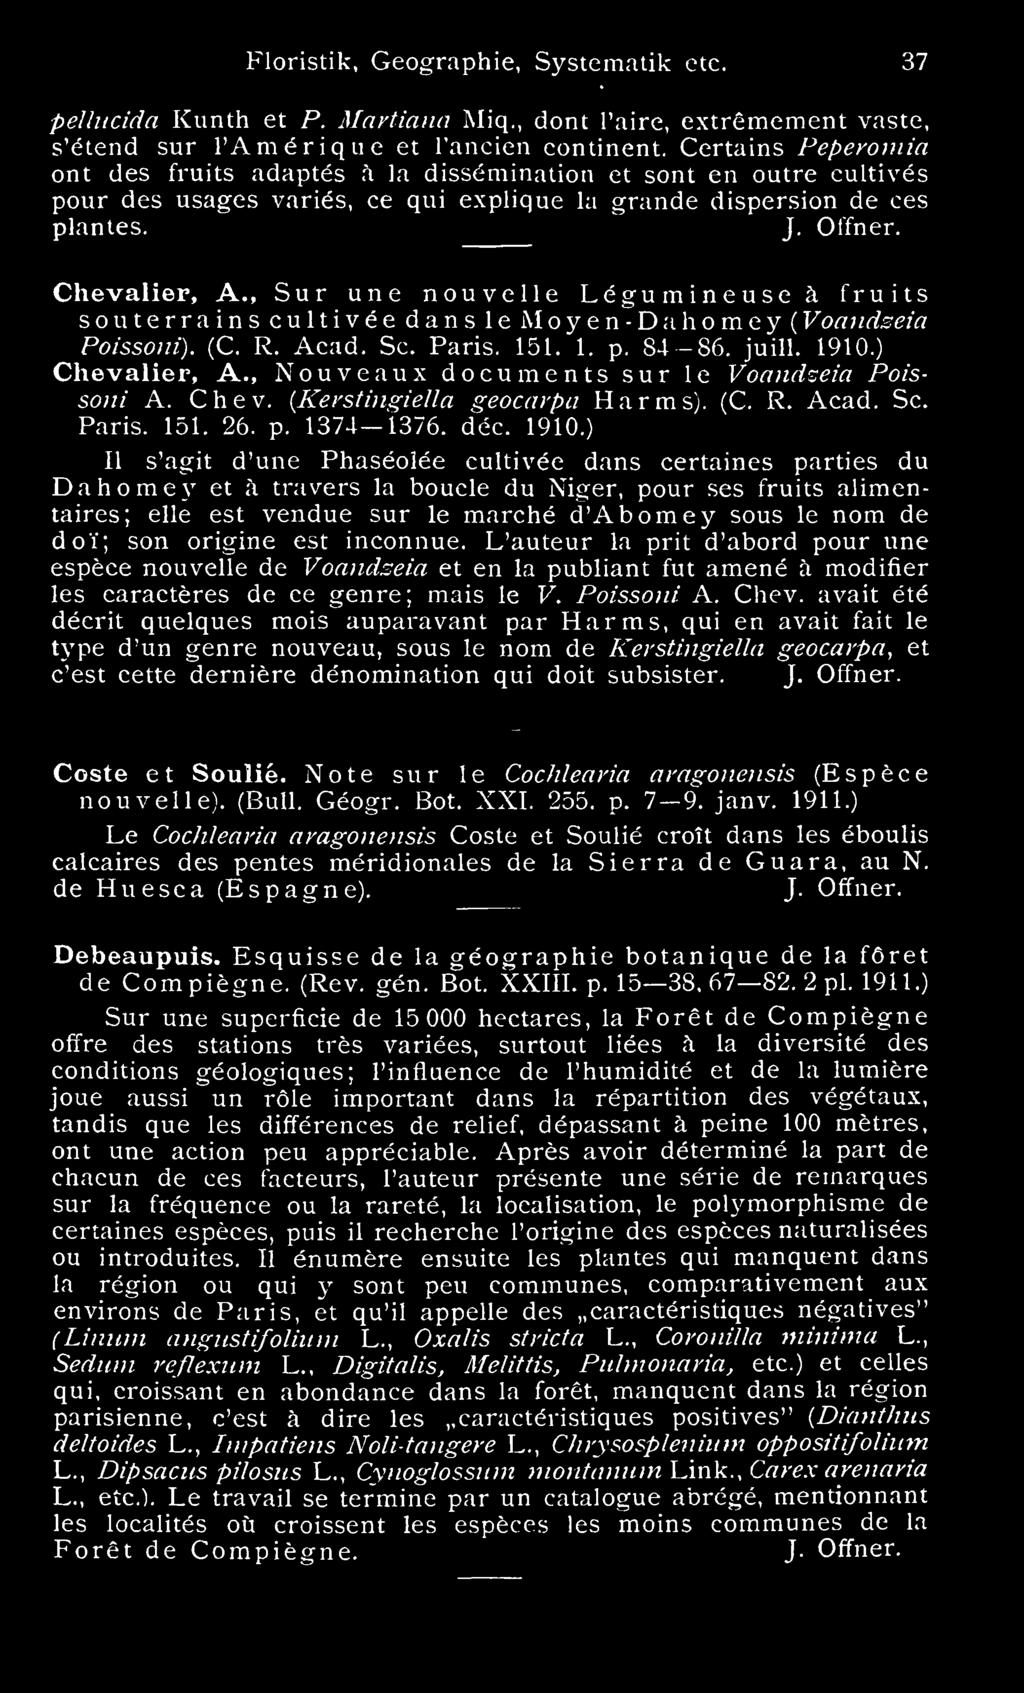 , Sur une nouvelle Legumineuseä souterrains fruits c u 1 1 i v e dans le Moyen-Dahomey ( Voandseia Poissoni). (C. R. Acad. Sc. Paris. 151. 1. p. 84-86. juill. 1910.) Chevalier, A.